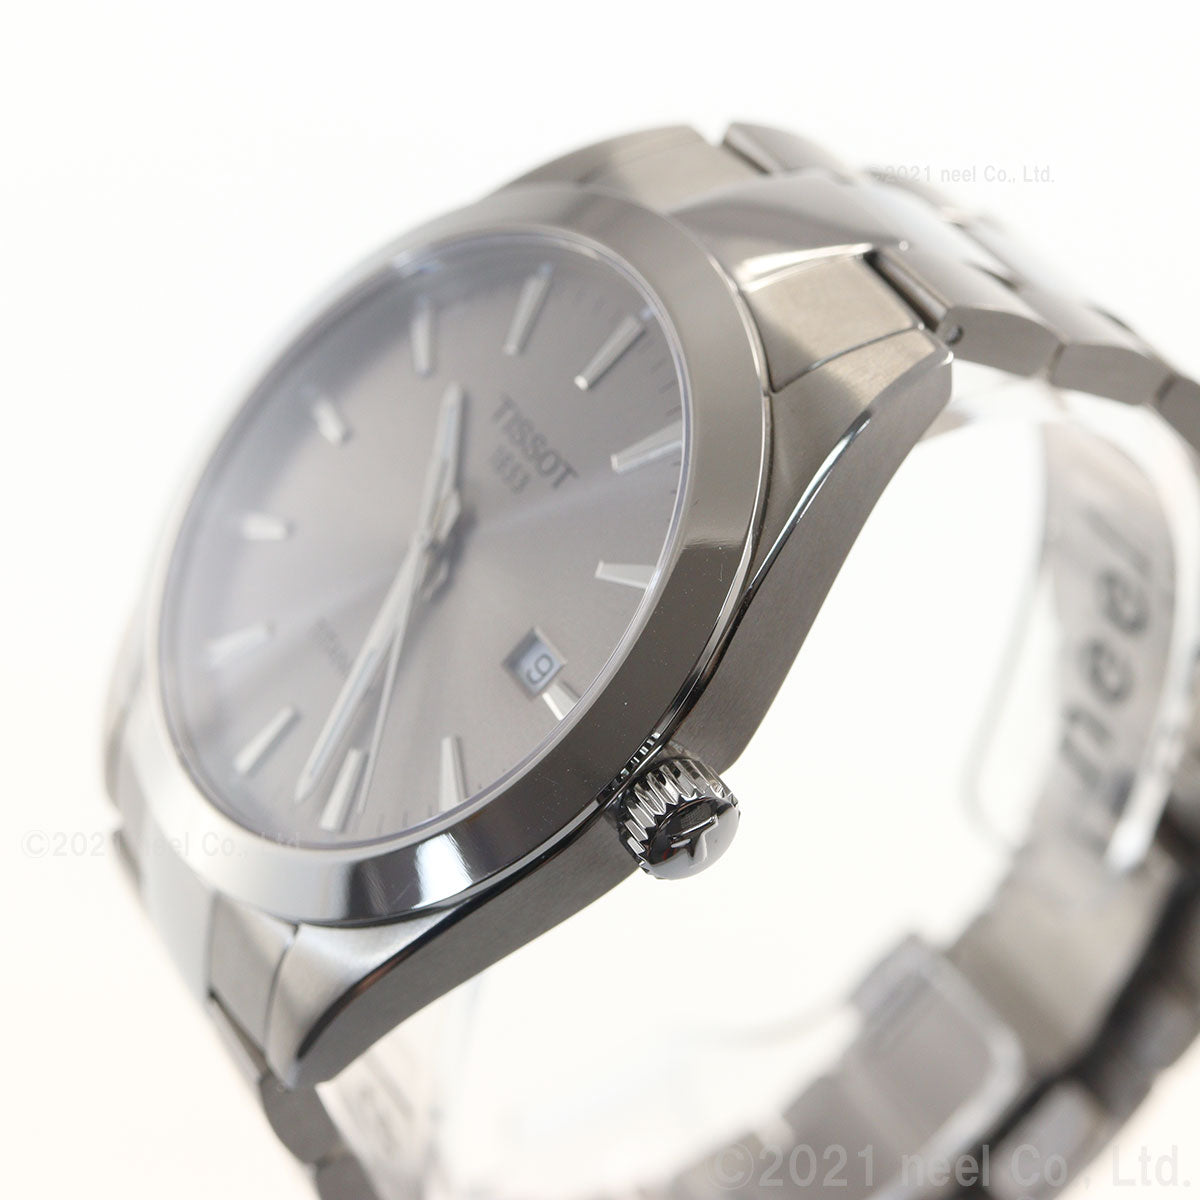 ティソ TISSOT 腕時計 メンズ ジェントルマン チタニウム GENTLEMAN TITANIUM T127.410.44.081.00